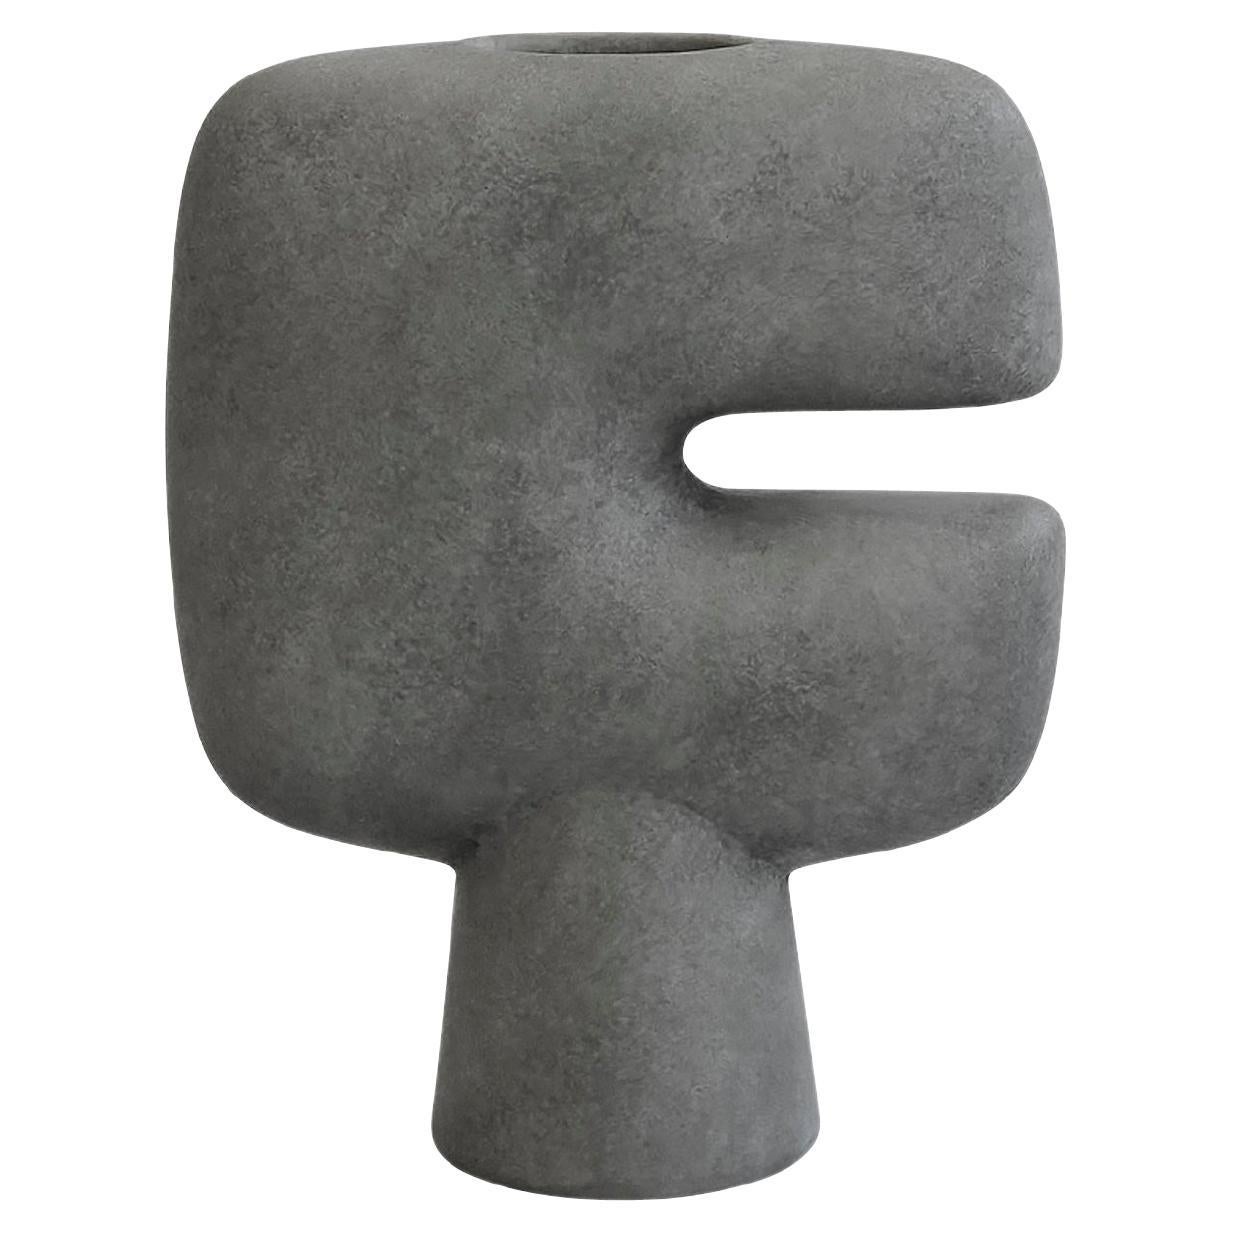 Chinese Small Dark Grey C Shaped Danish Design Vase, China, Contemporary